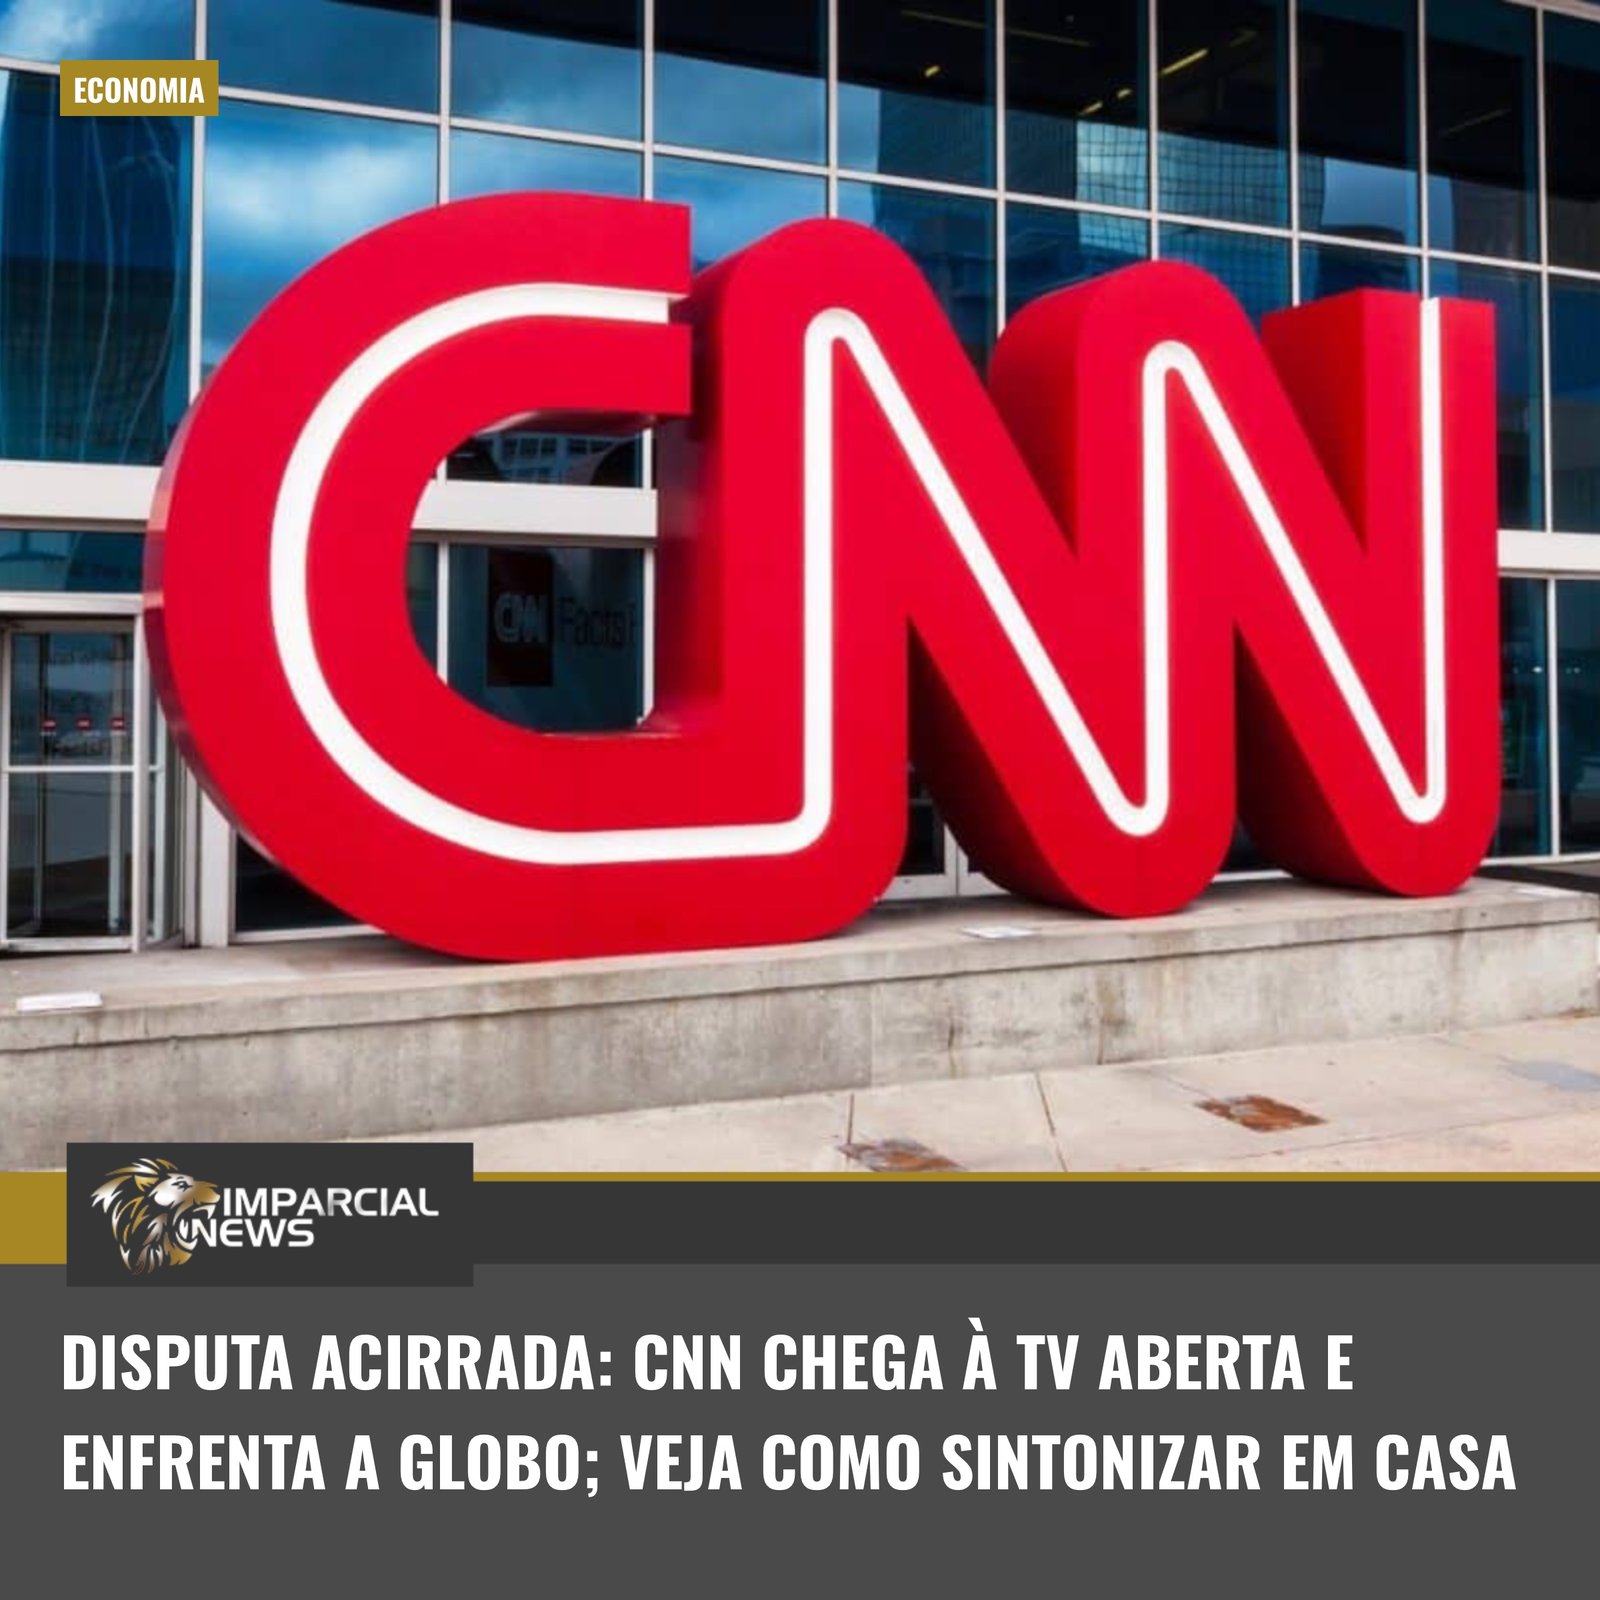  Shiddatli bahs: CNN ochiq televideniega keladi va Globo bilan yuzma-yuz keladi; uyda qanday sozlashni ko'ring